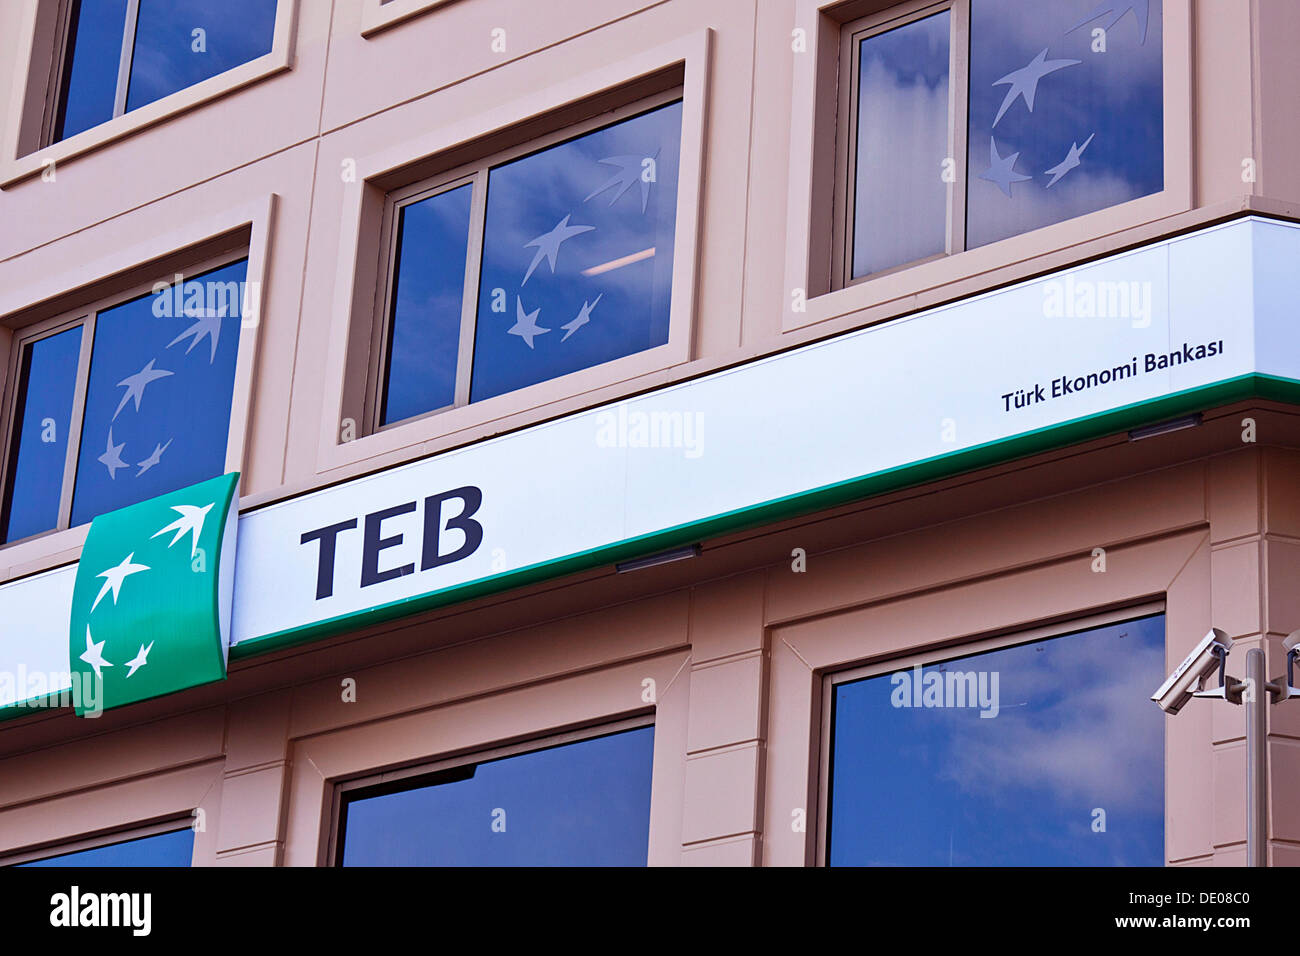 Rama de la TEB, Tuerk Ekonomi Bankasi o banco de la economía turca, Estambul, Turquía Foto de stock